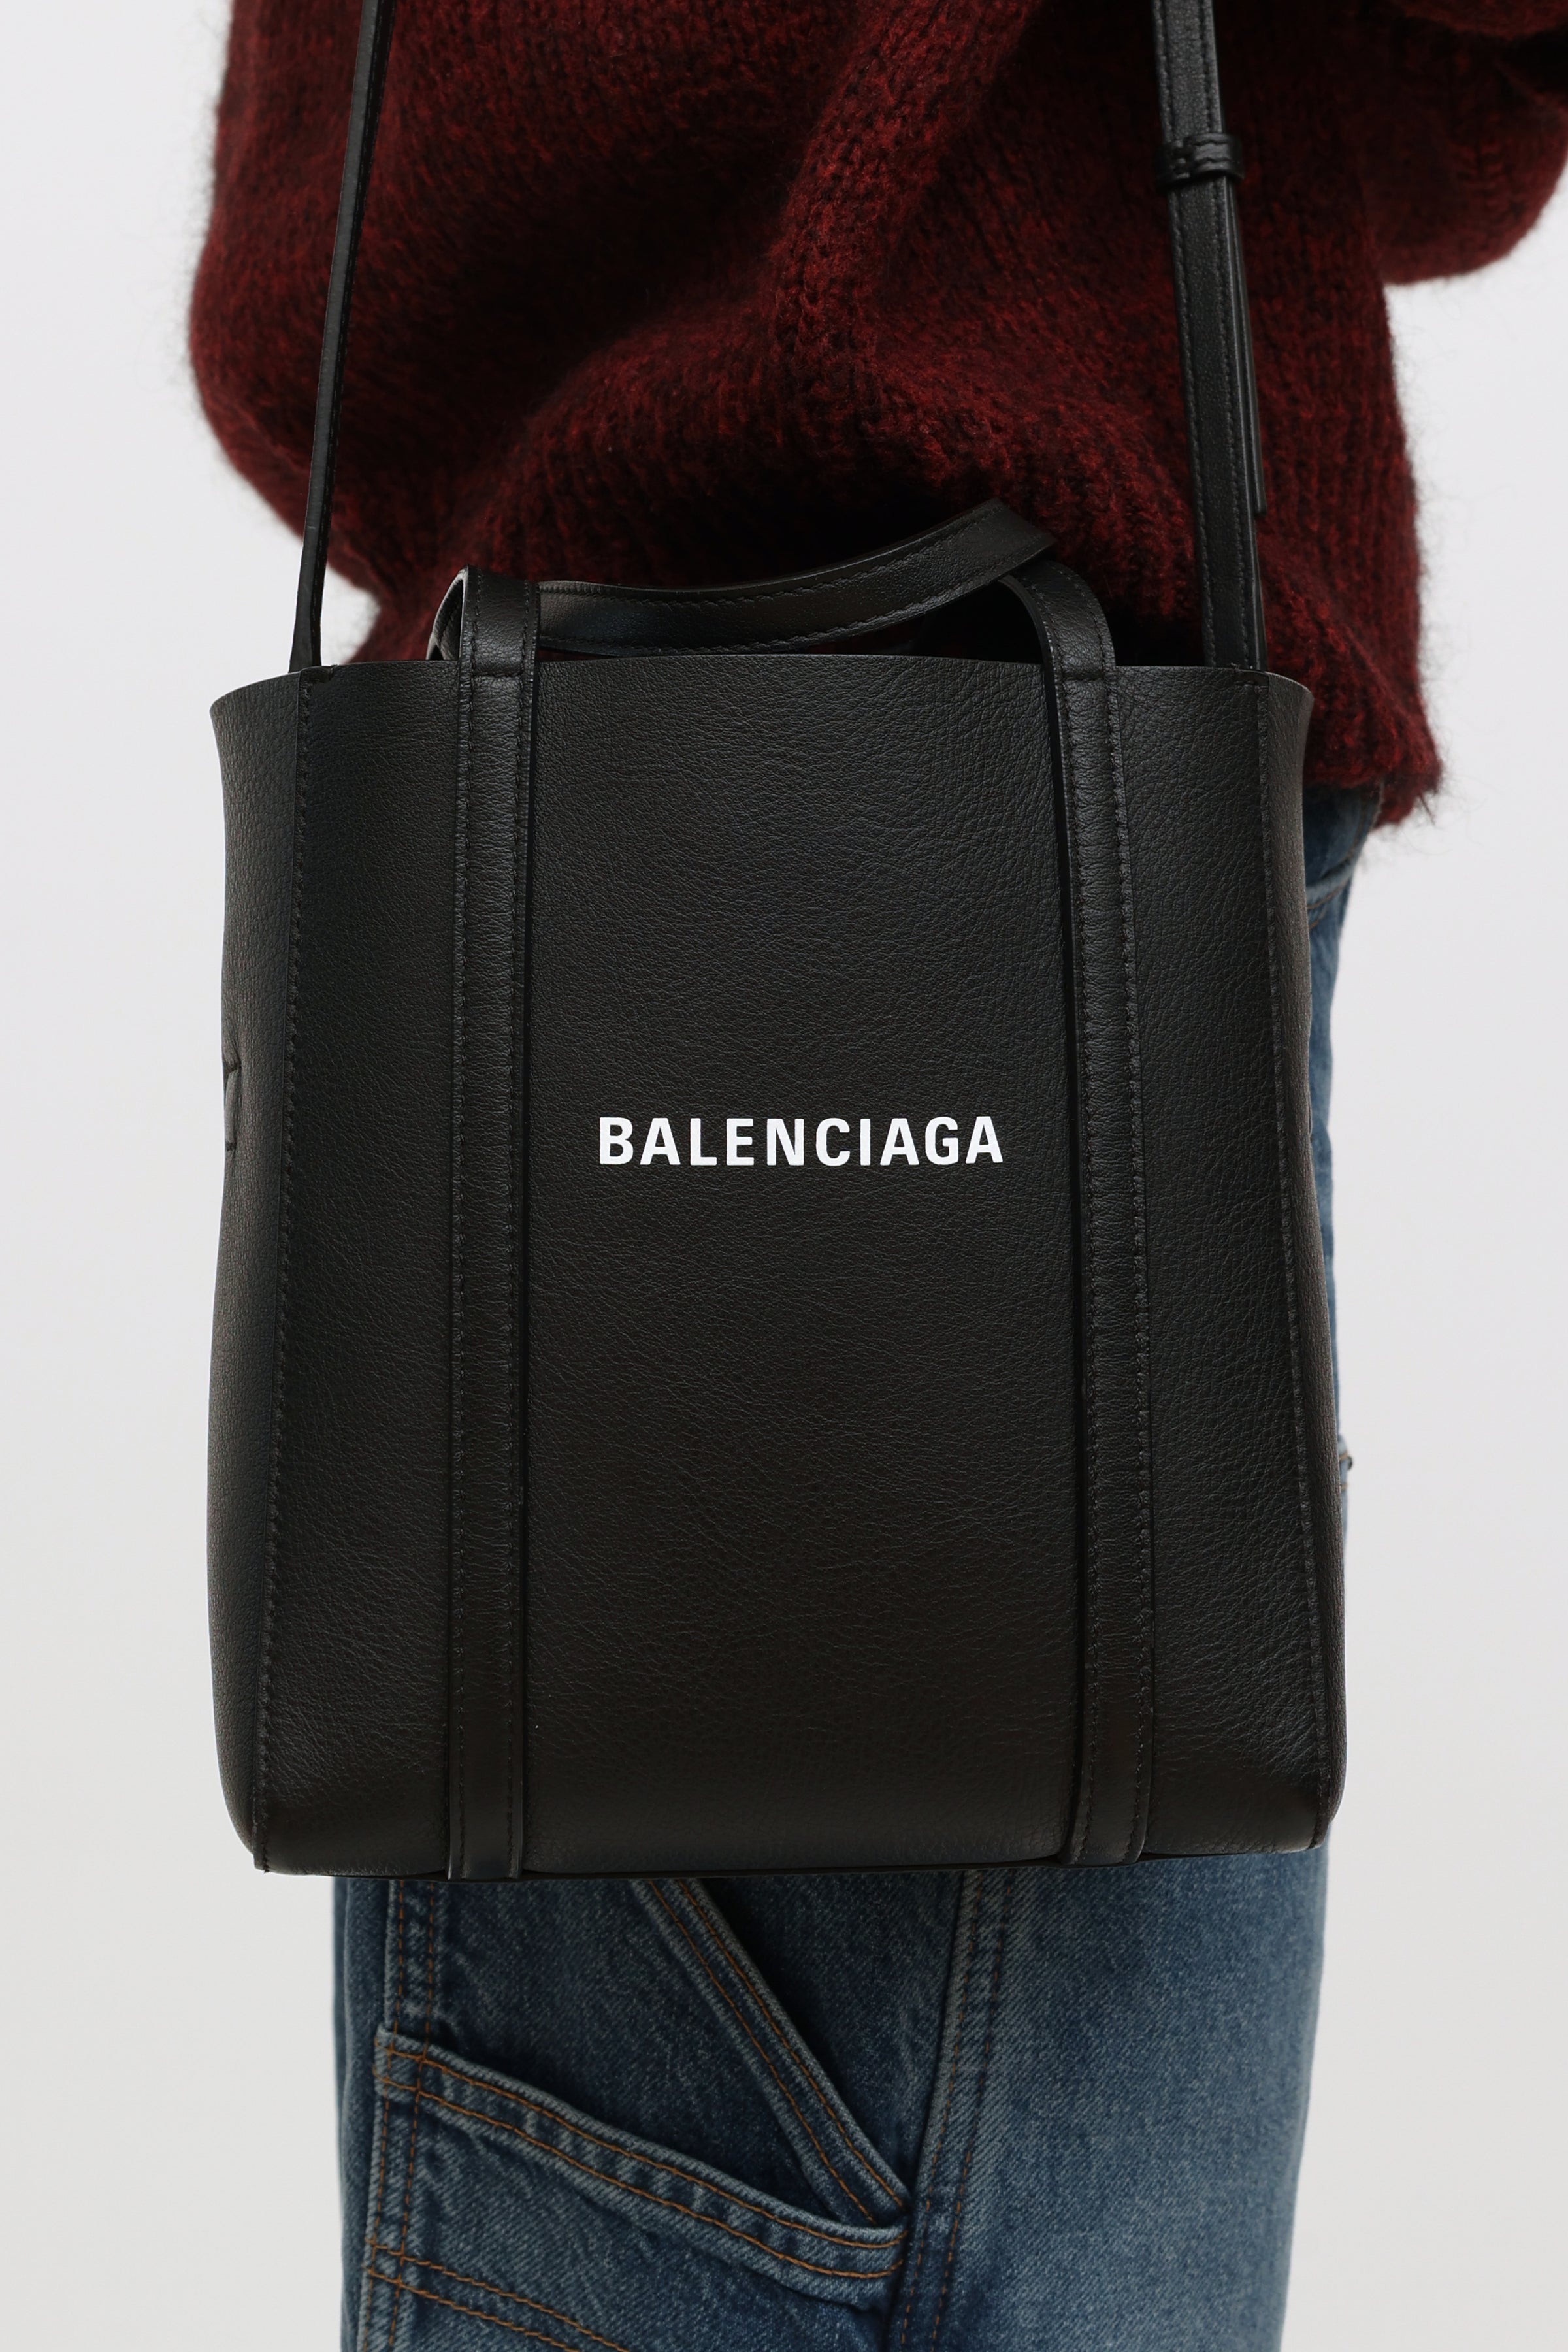 Balenciaga Everyday Tote Bag Black  Costco